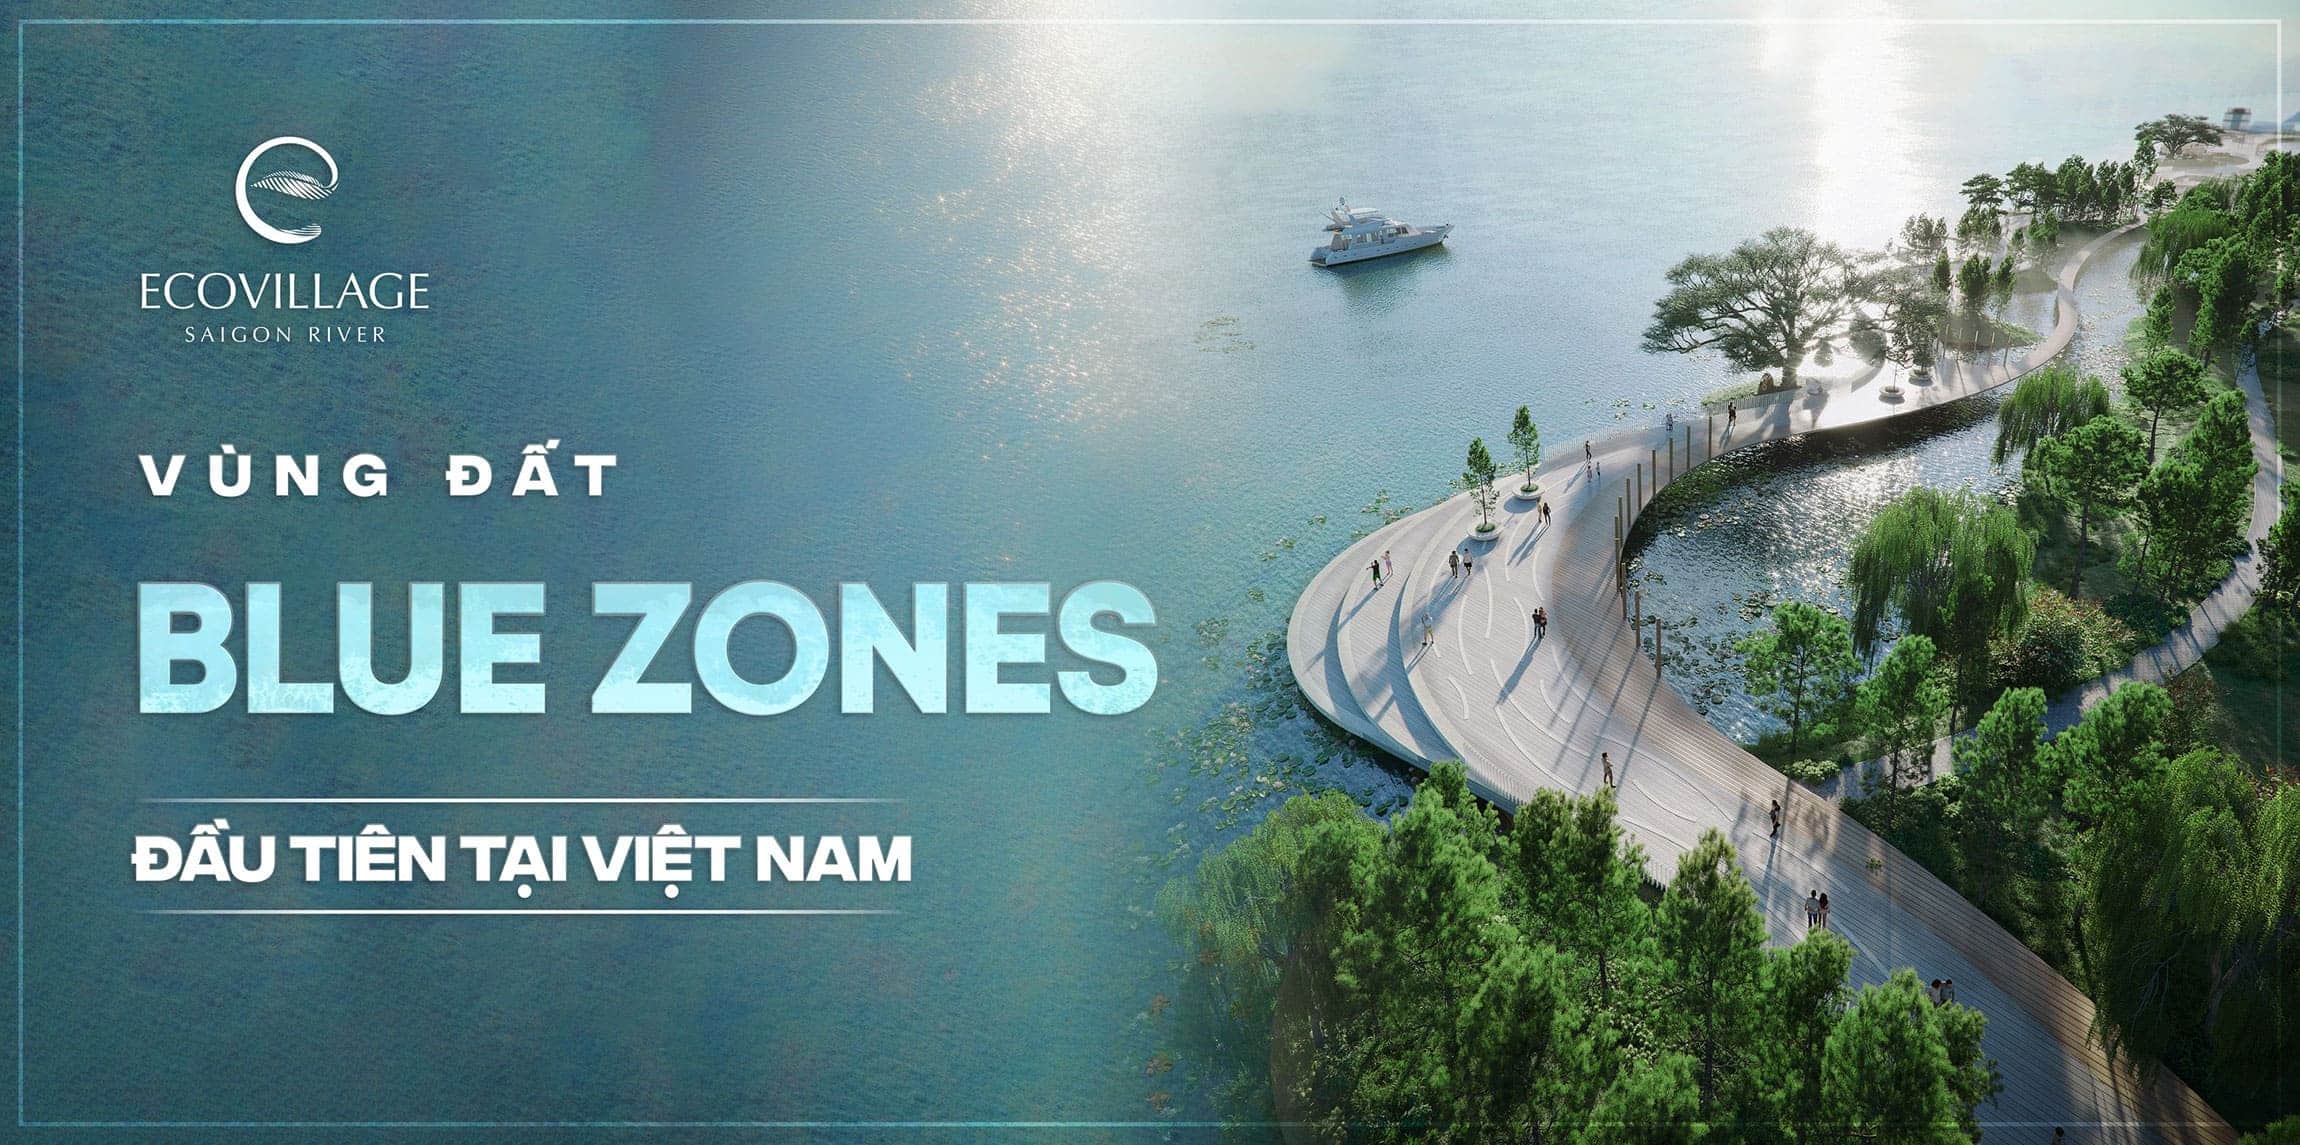 Eco Village Saigon River vùng đất Bluezones đầu tiên tại Việt Nam.